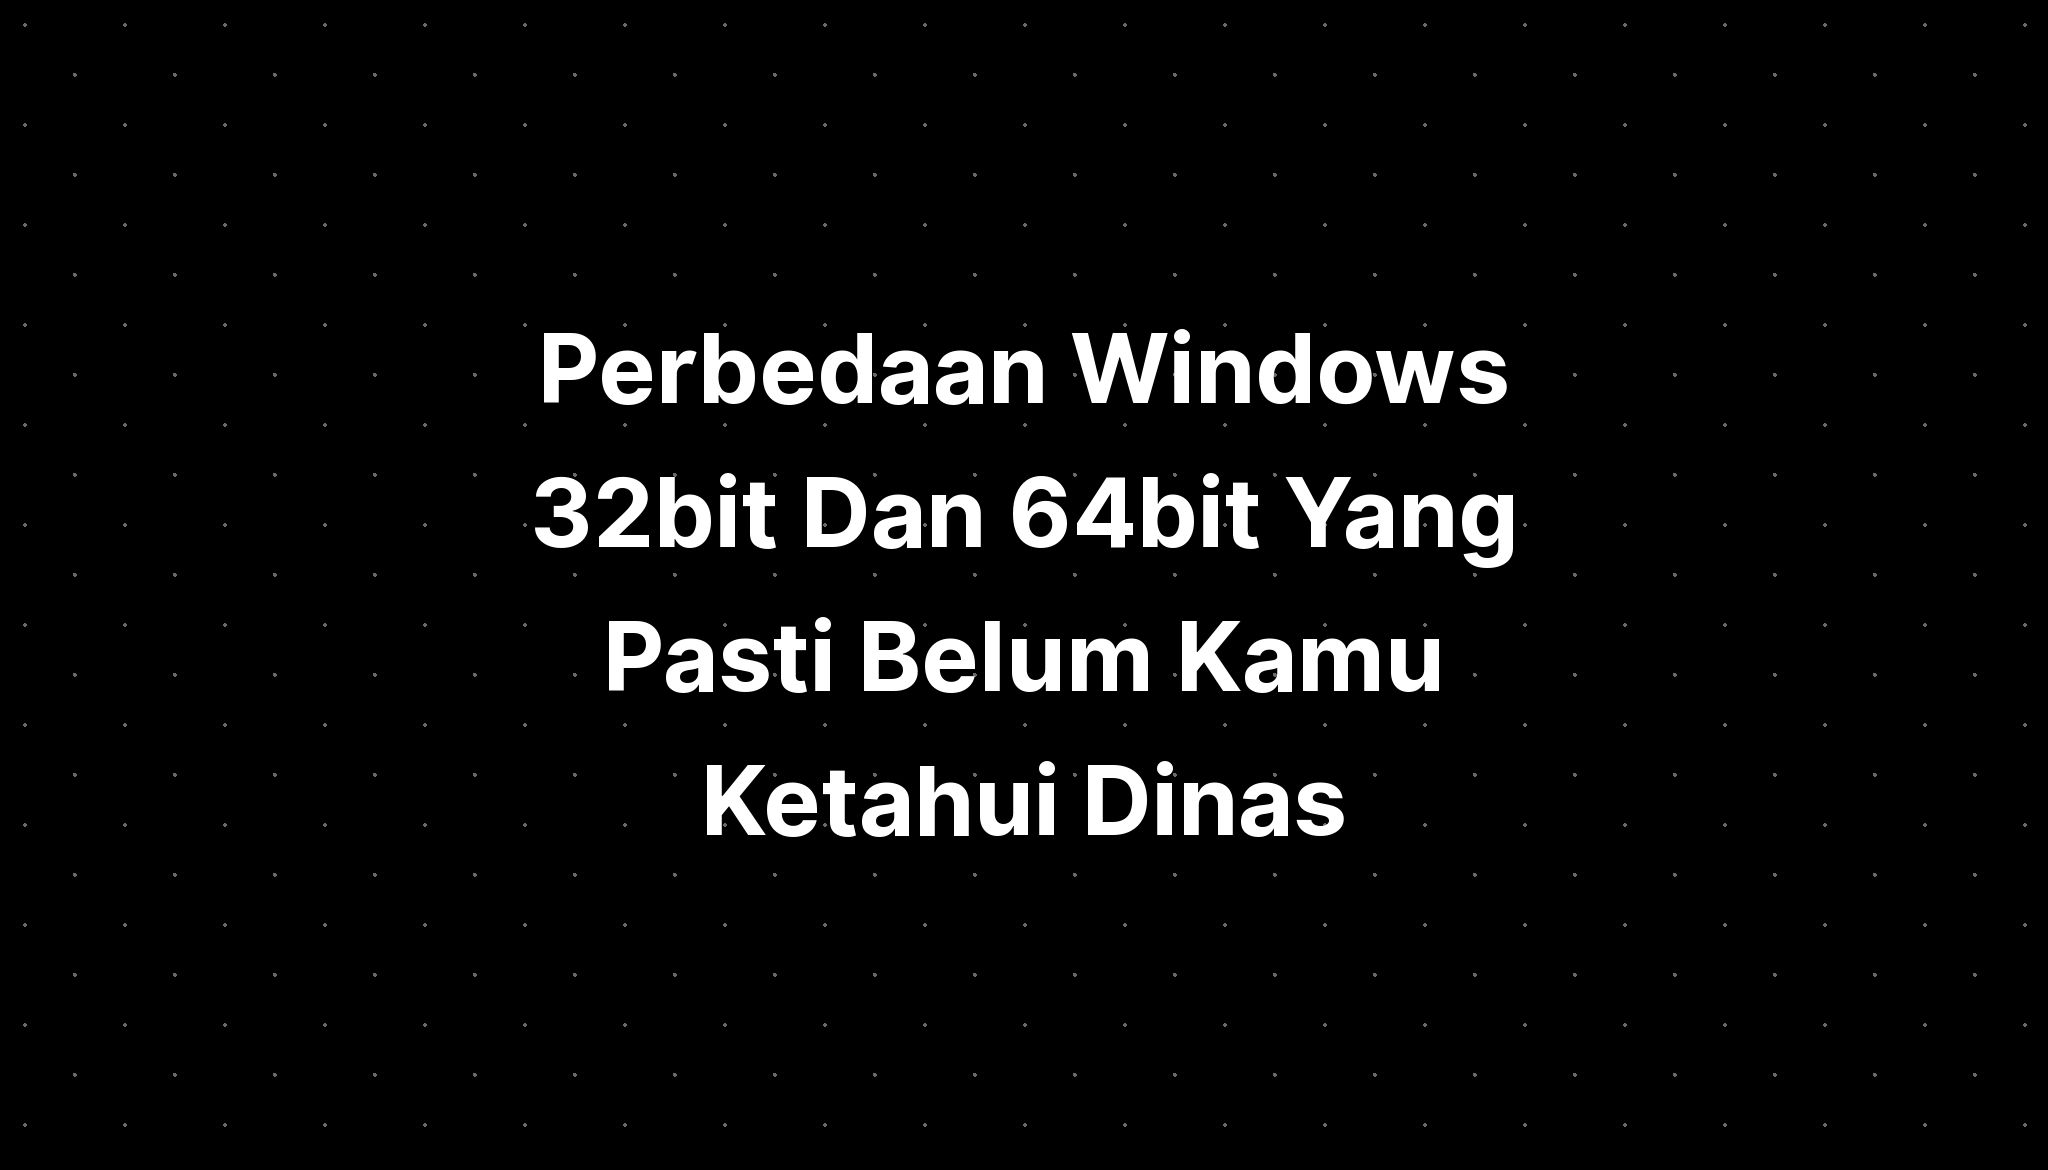 Perbedaan Windows 32bit Dan 64bit Yang Pasti Belum Kamu Ketahui Dinas 0910